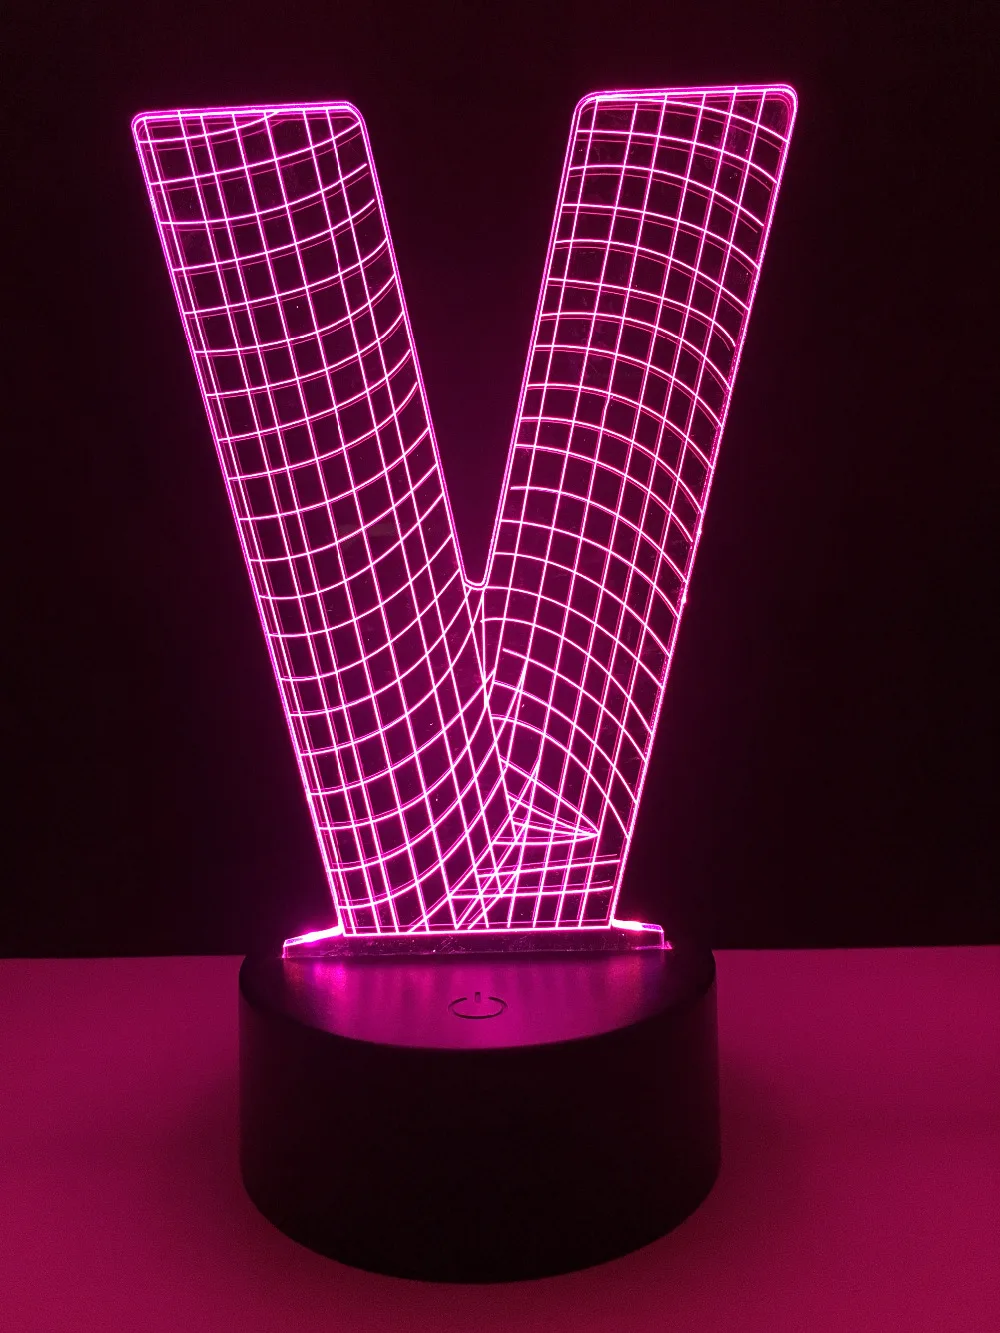 Удивительный 3D светодиодный светильник 26 букв алфавита A-Z многоцветный градиент прикроватный стол ночной Светильник прикроватный домашний декор DIY подарок